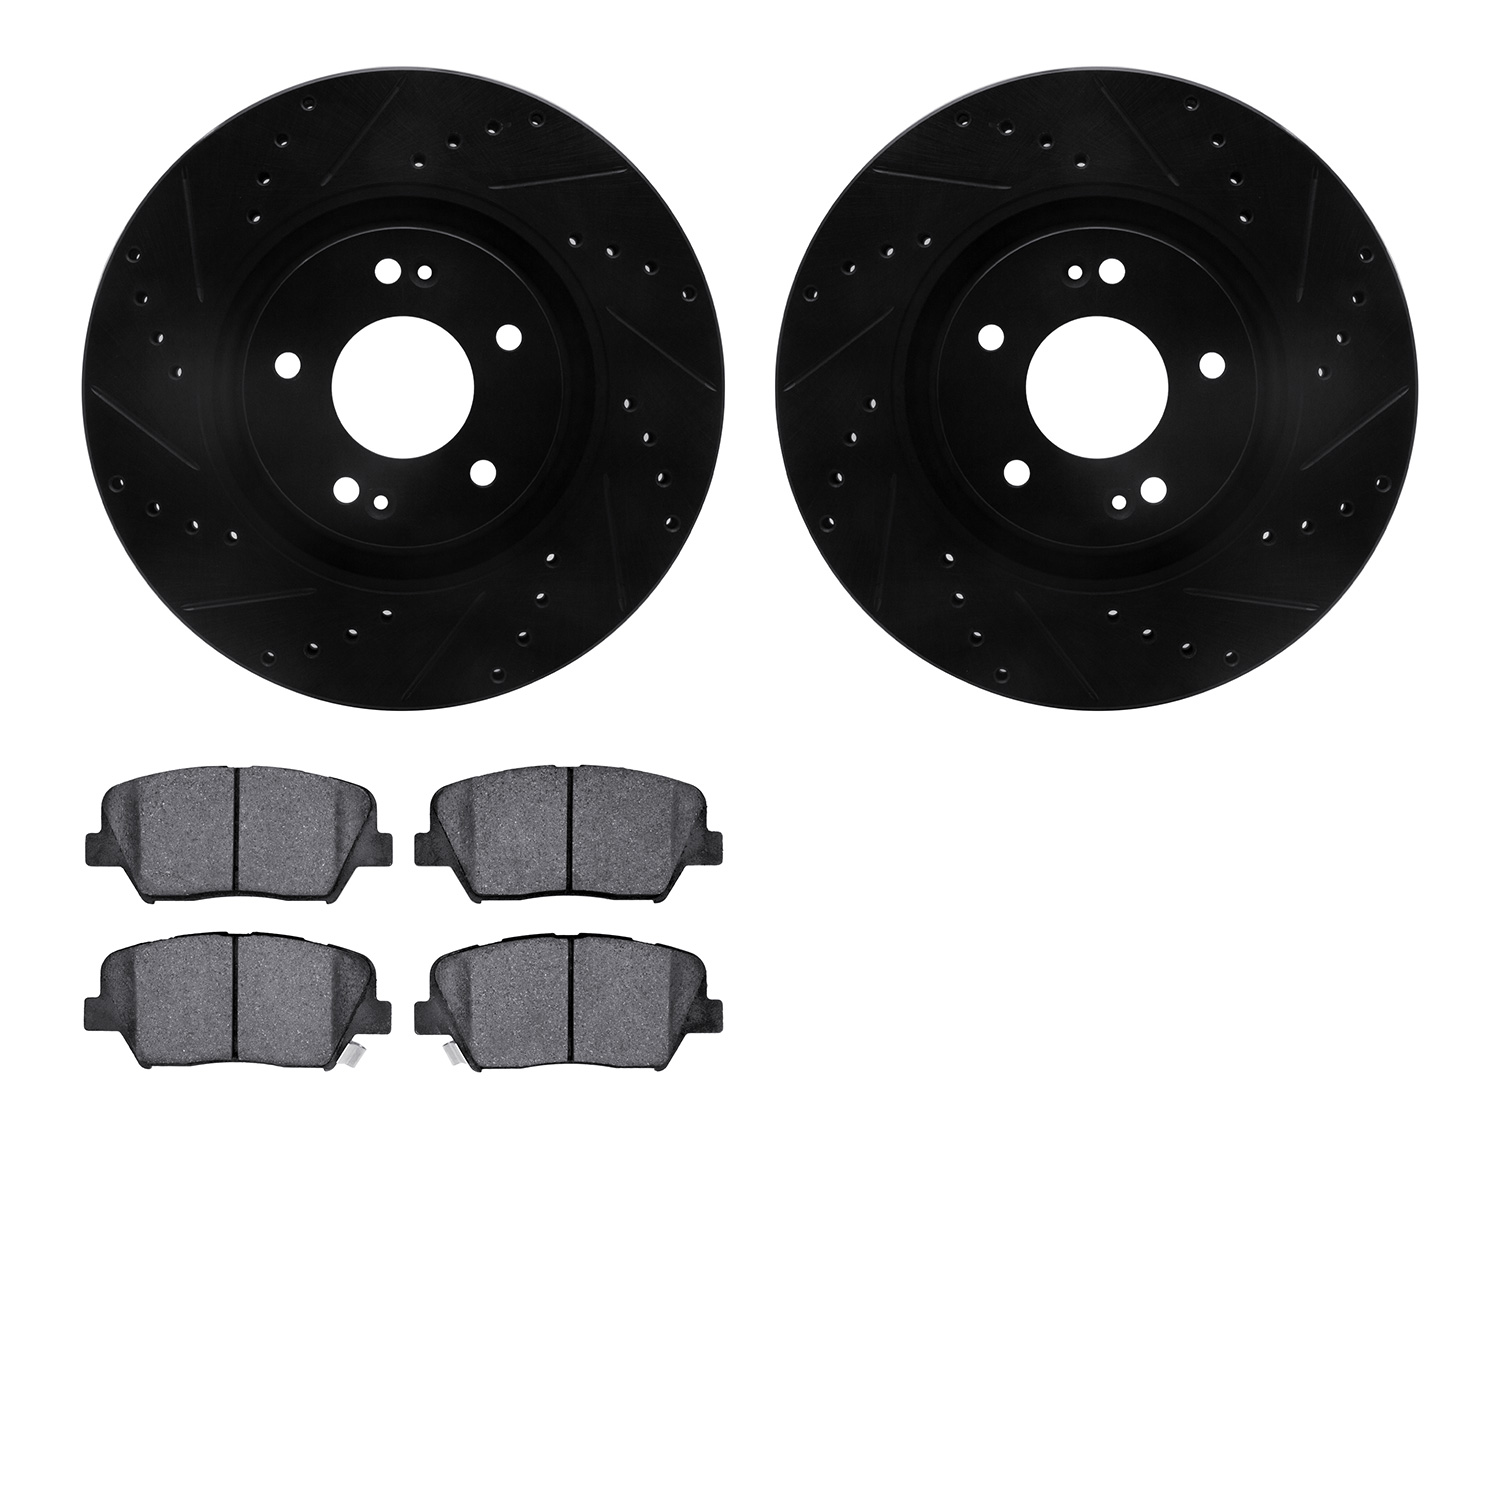 8302-03081 Drilled/Slotted Brake Rotors with 3000-Series Ceramic Brake Pads Kit [Black], Fits Select Kia/Hyundai/Genesis, Positi